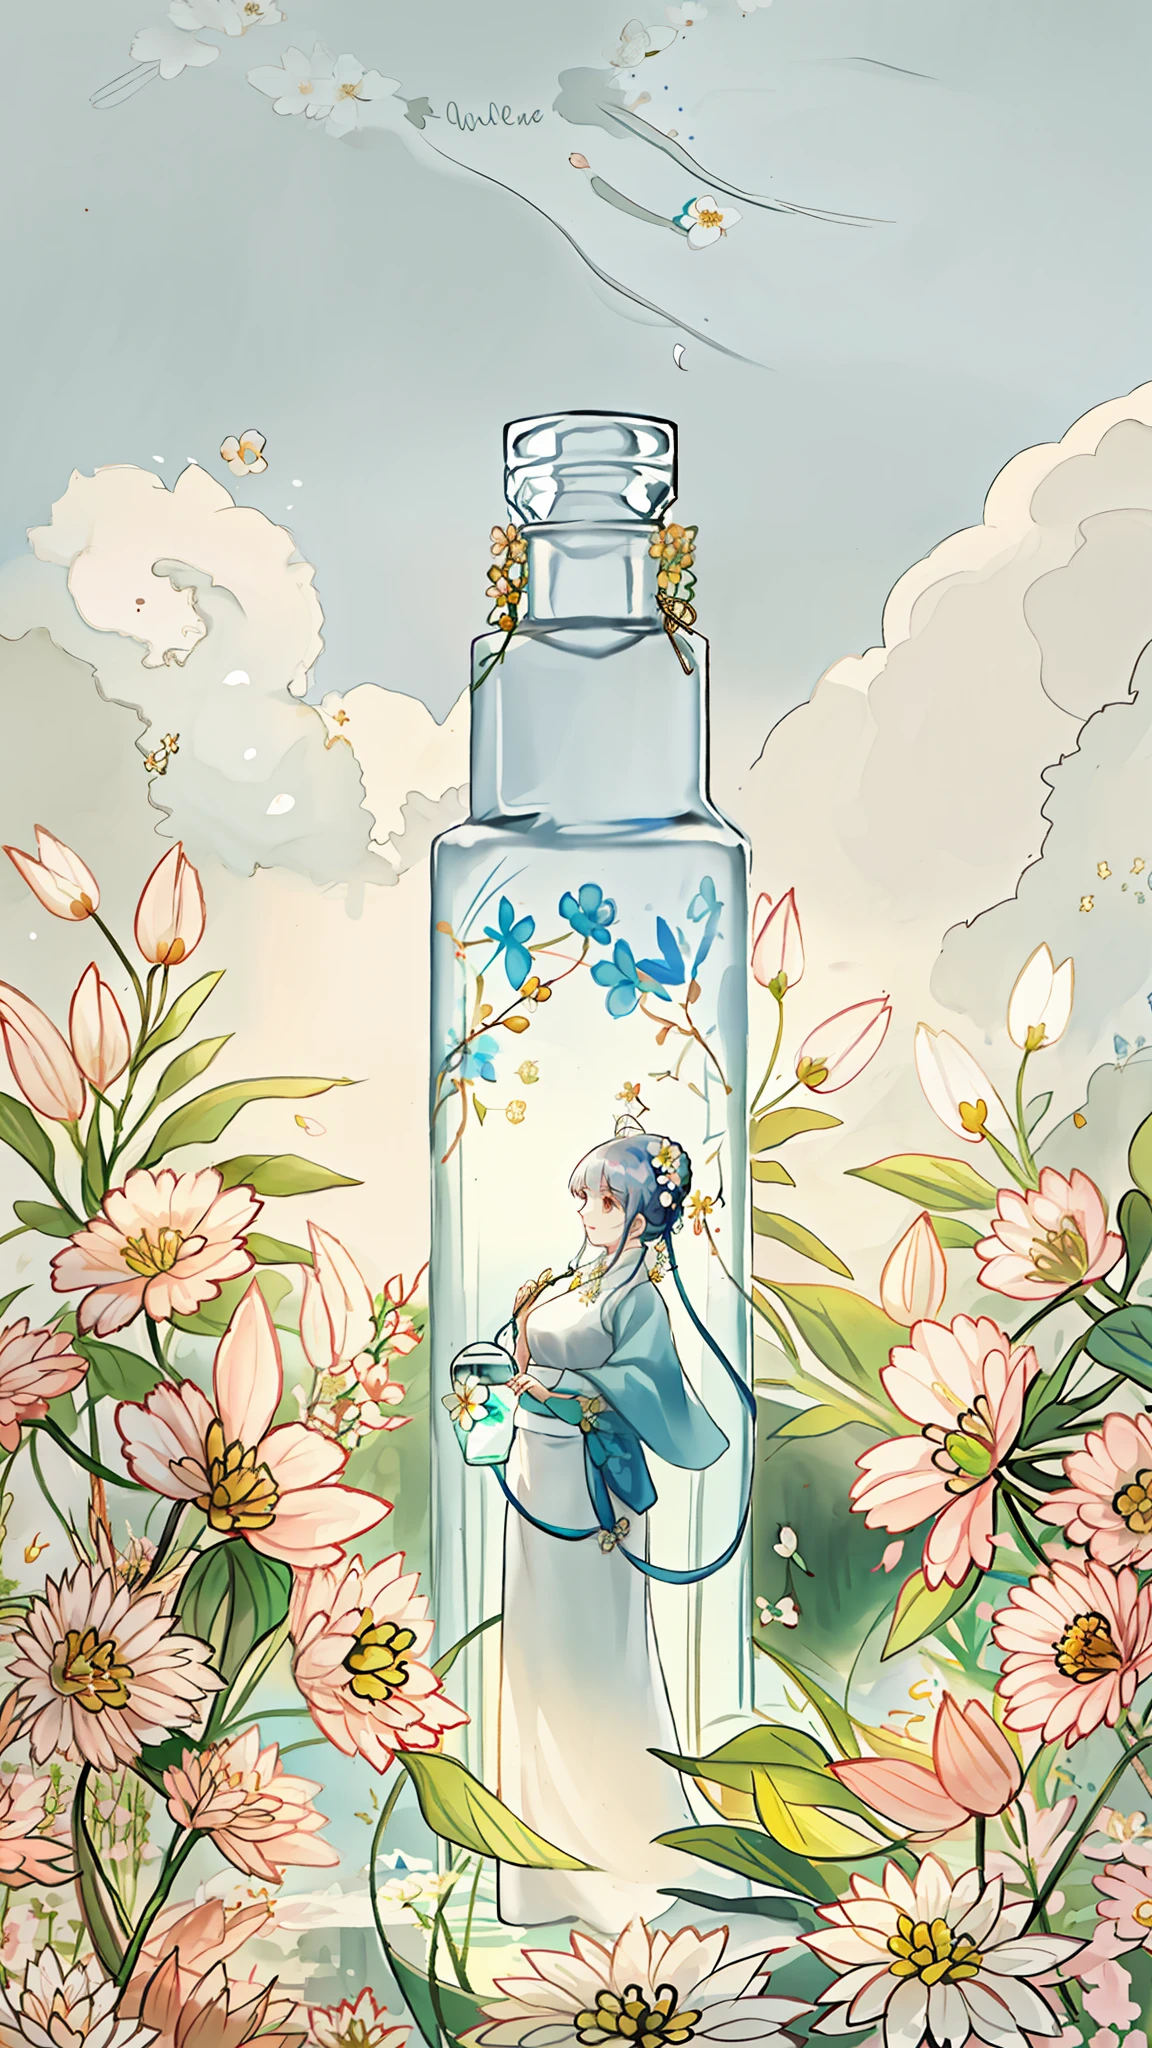 一個白色的圓瓶, surrounded by 花朵, 一個年輕女子站在瓶子旁邊, 精緻的臉龐, 花朵, 顏色, 活力, 美麗, 對比, 自然, 生命力, 陽光. 美麗的氣氛, 和諧舒適的融合